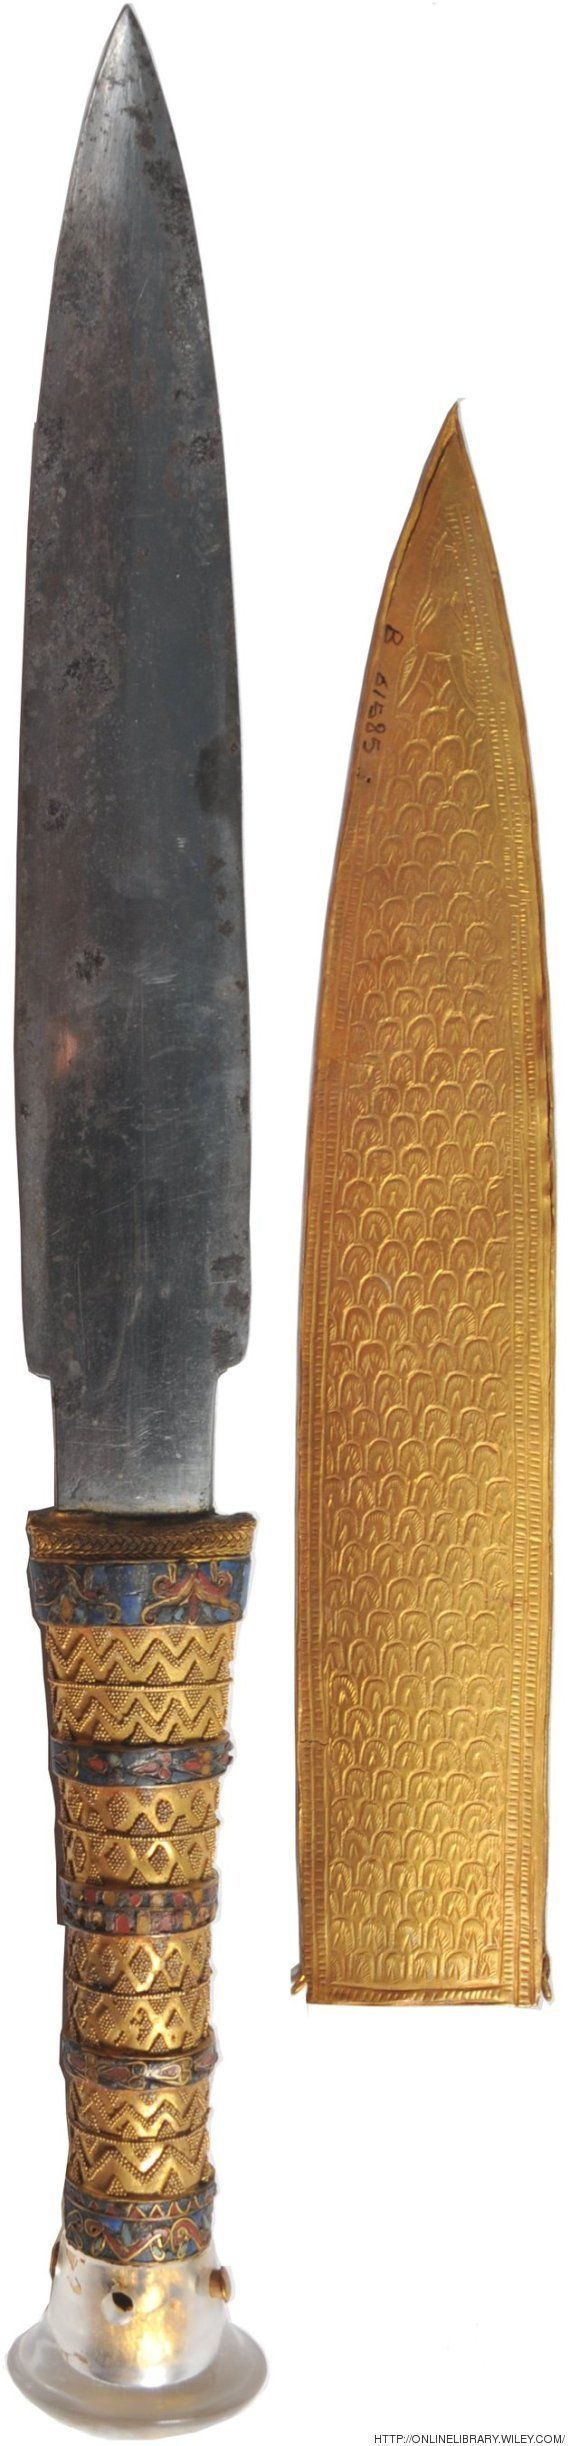 ツタンカーメンの短剣は 隕石からできていた ハフポスト